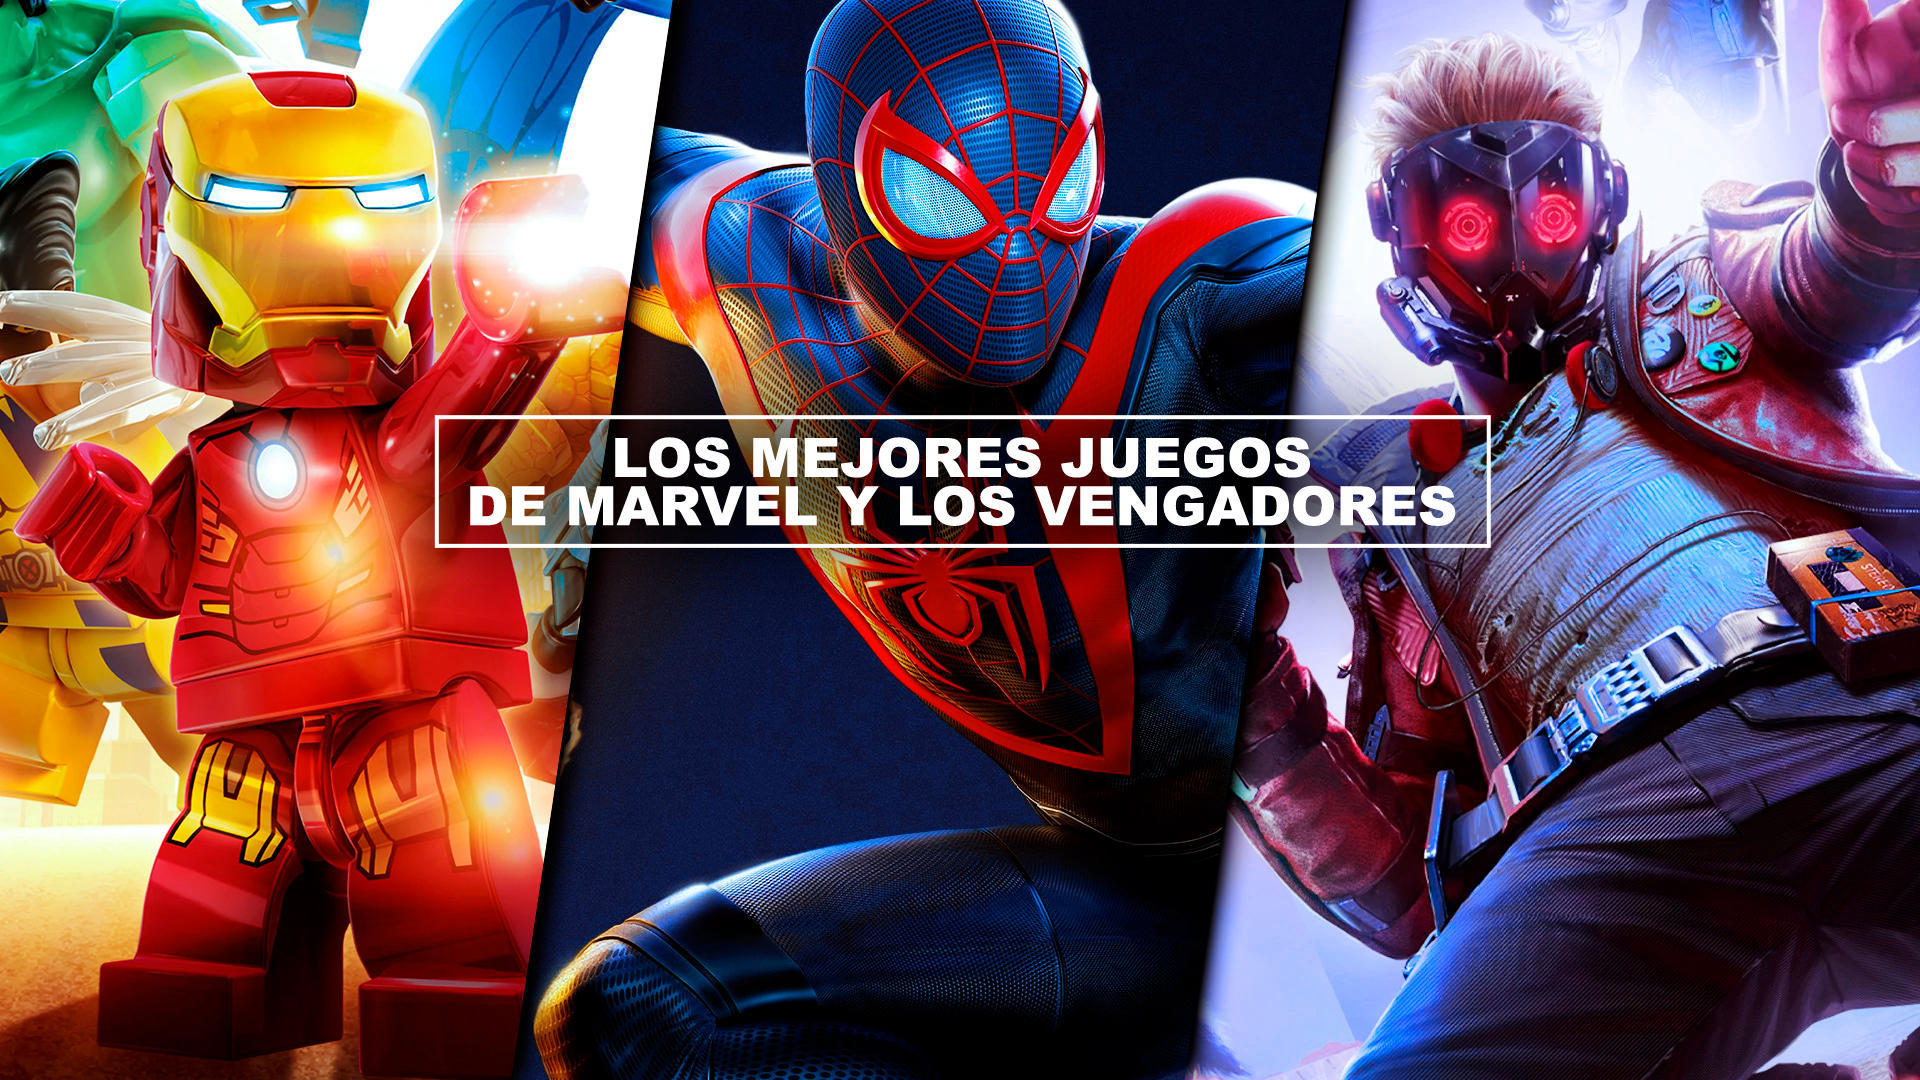 Los mejores juegos de Marvel y Los Vengadores - Imprescindibles!